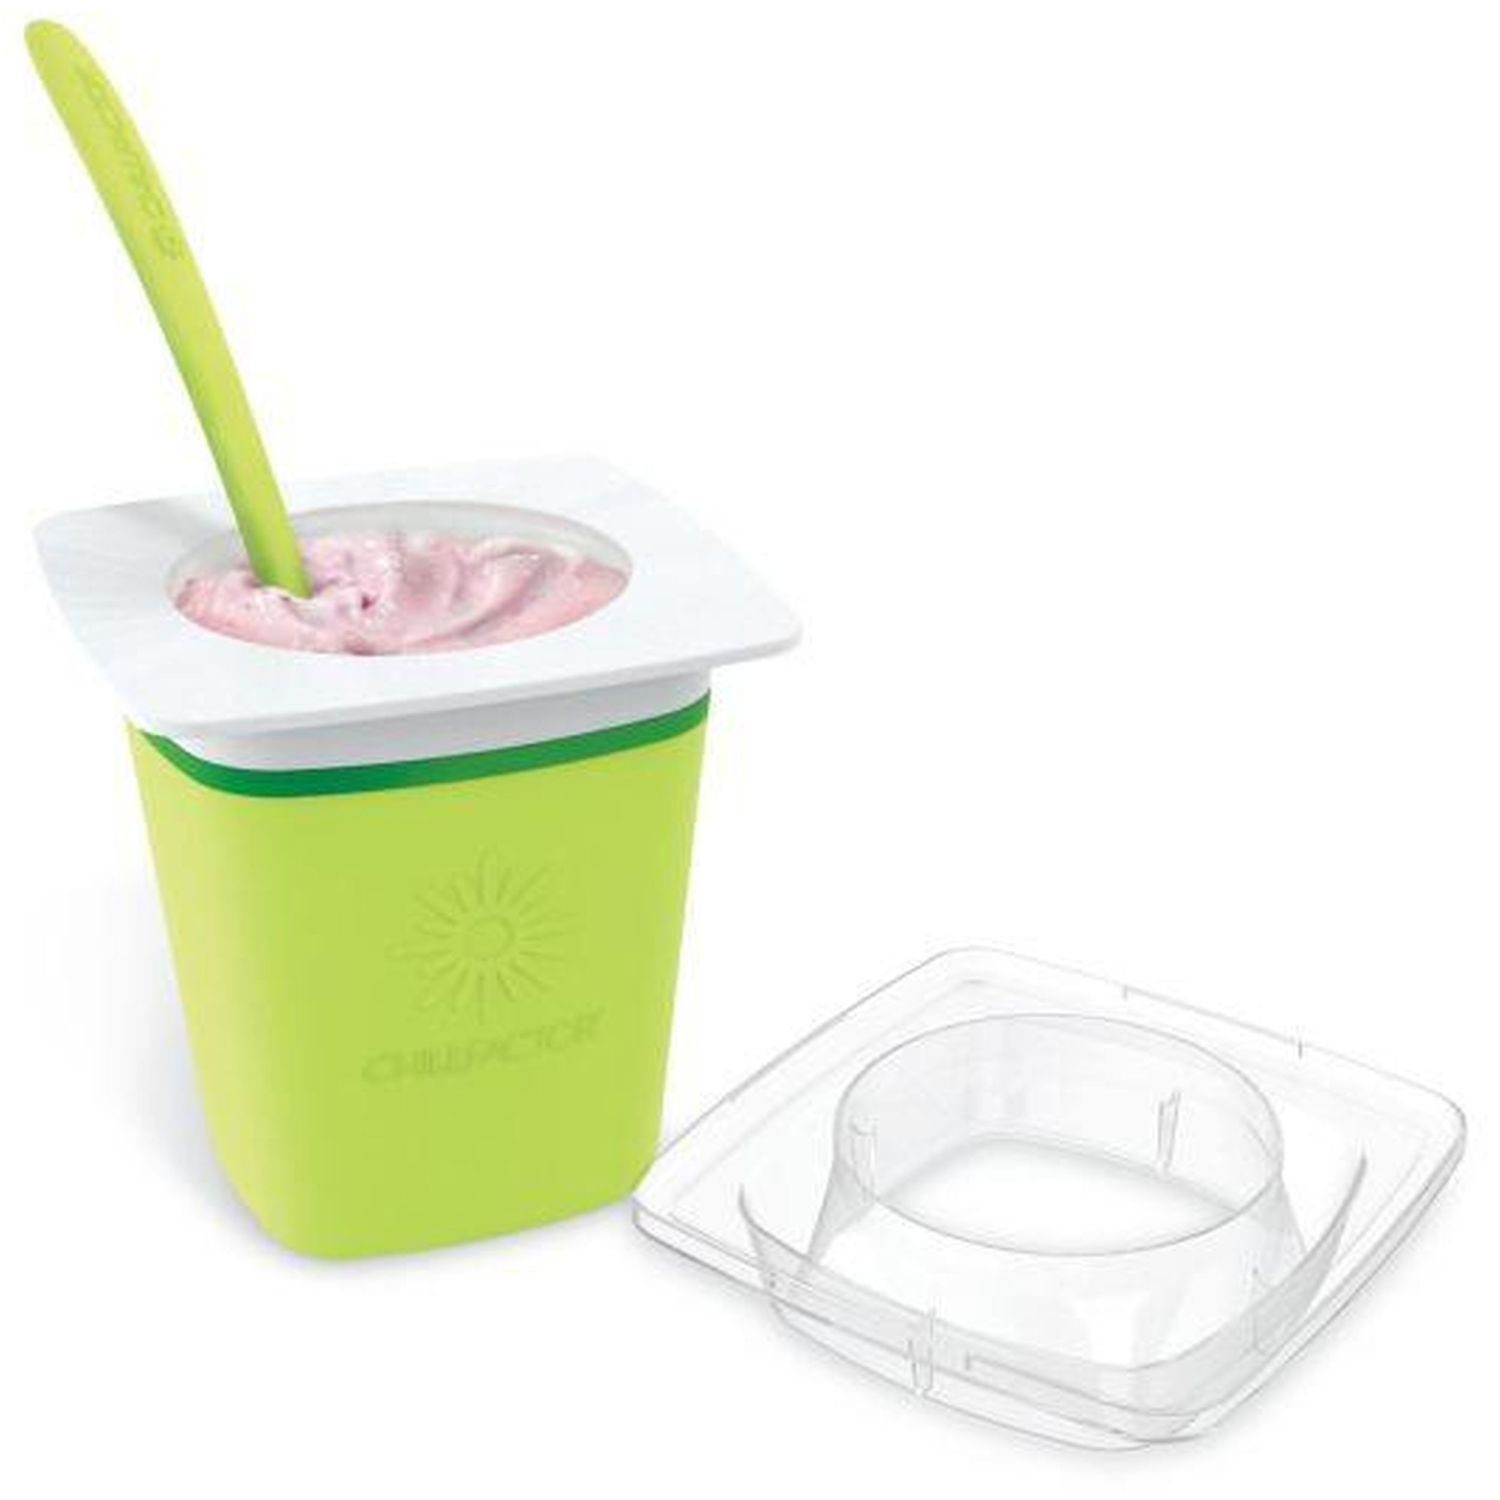 - Factor Chill Joghurt Maker Markenwarenshop-Style Grün Frozen Aufbewahrungsbecher 400ml Joghurt Eis